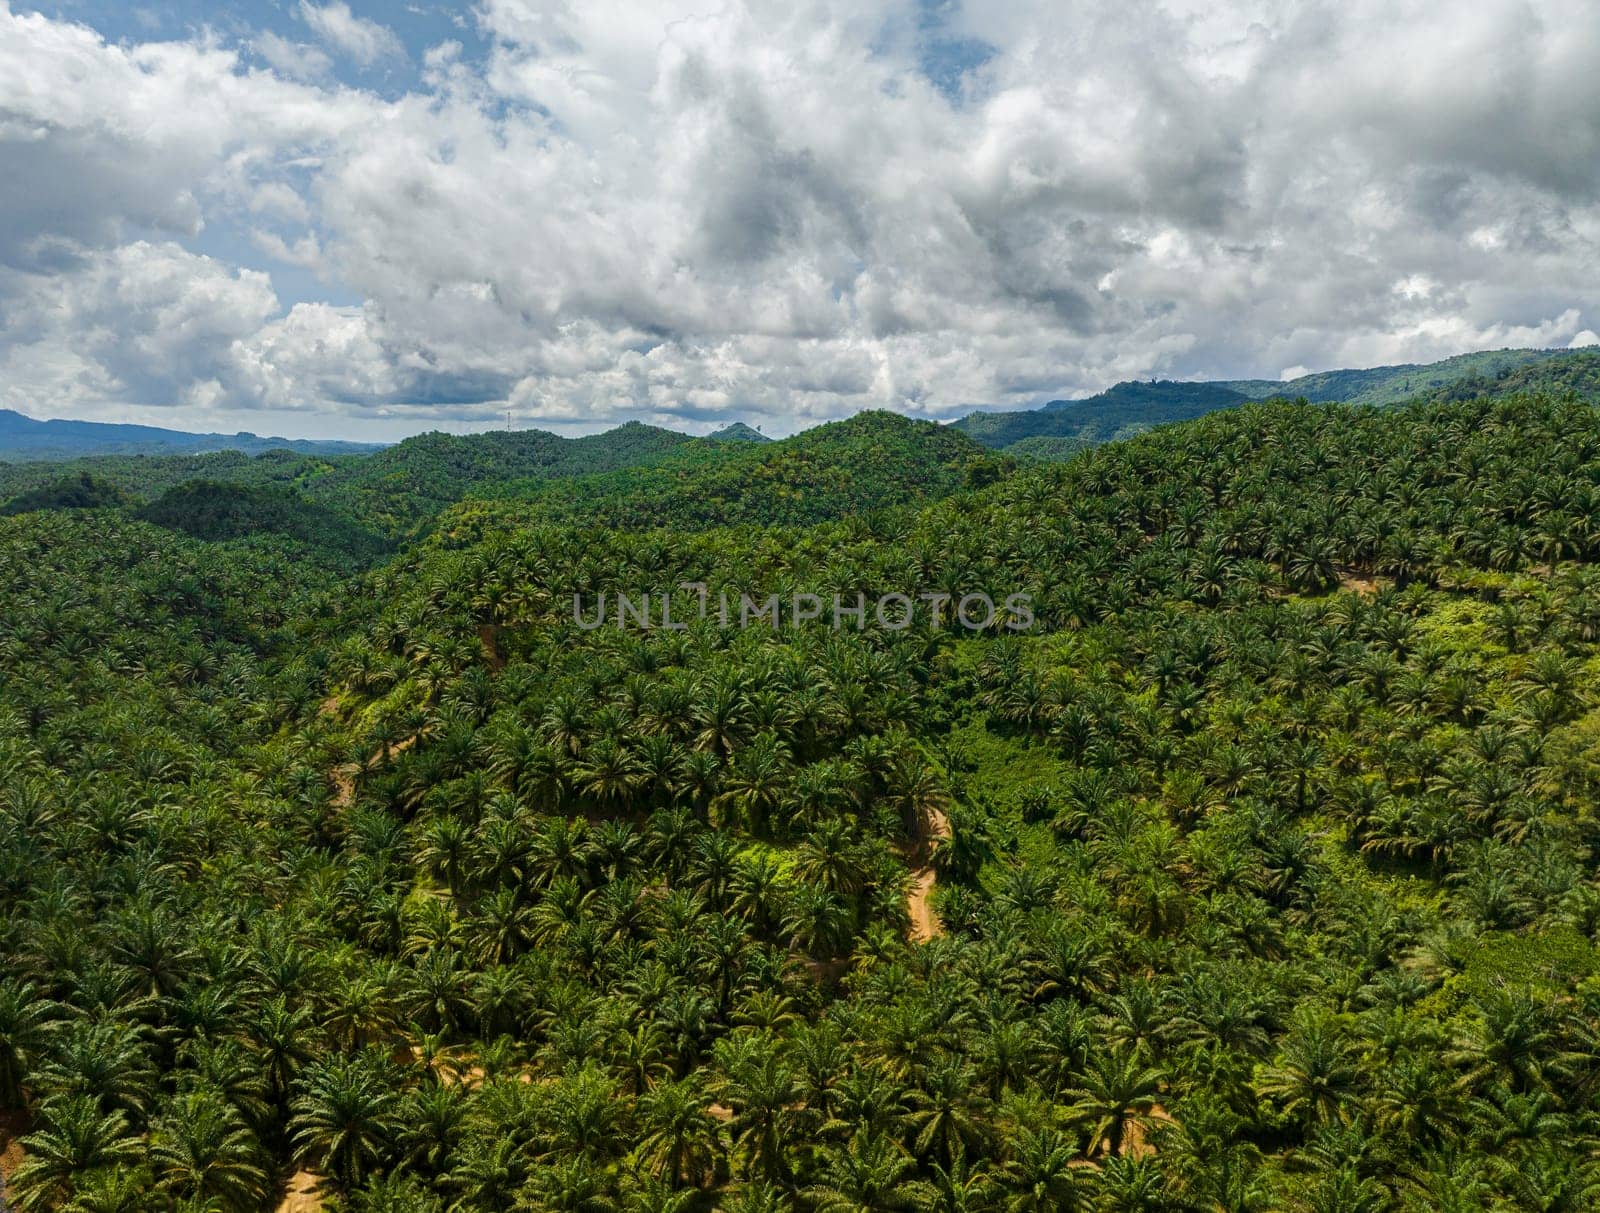 Oil palm plantations in Malaysia. Palm oil estate in Borneo.